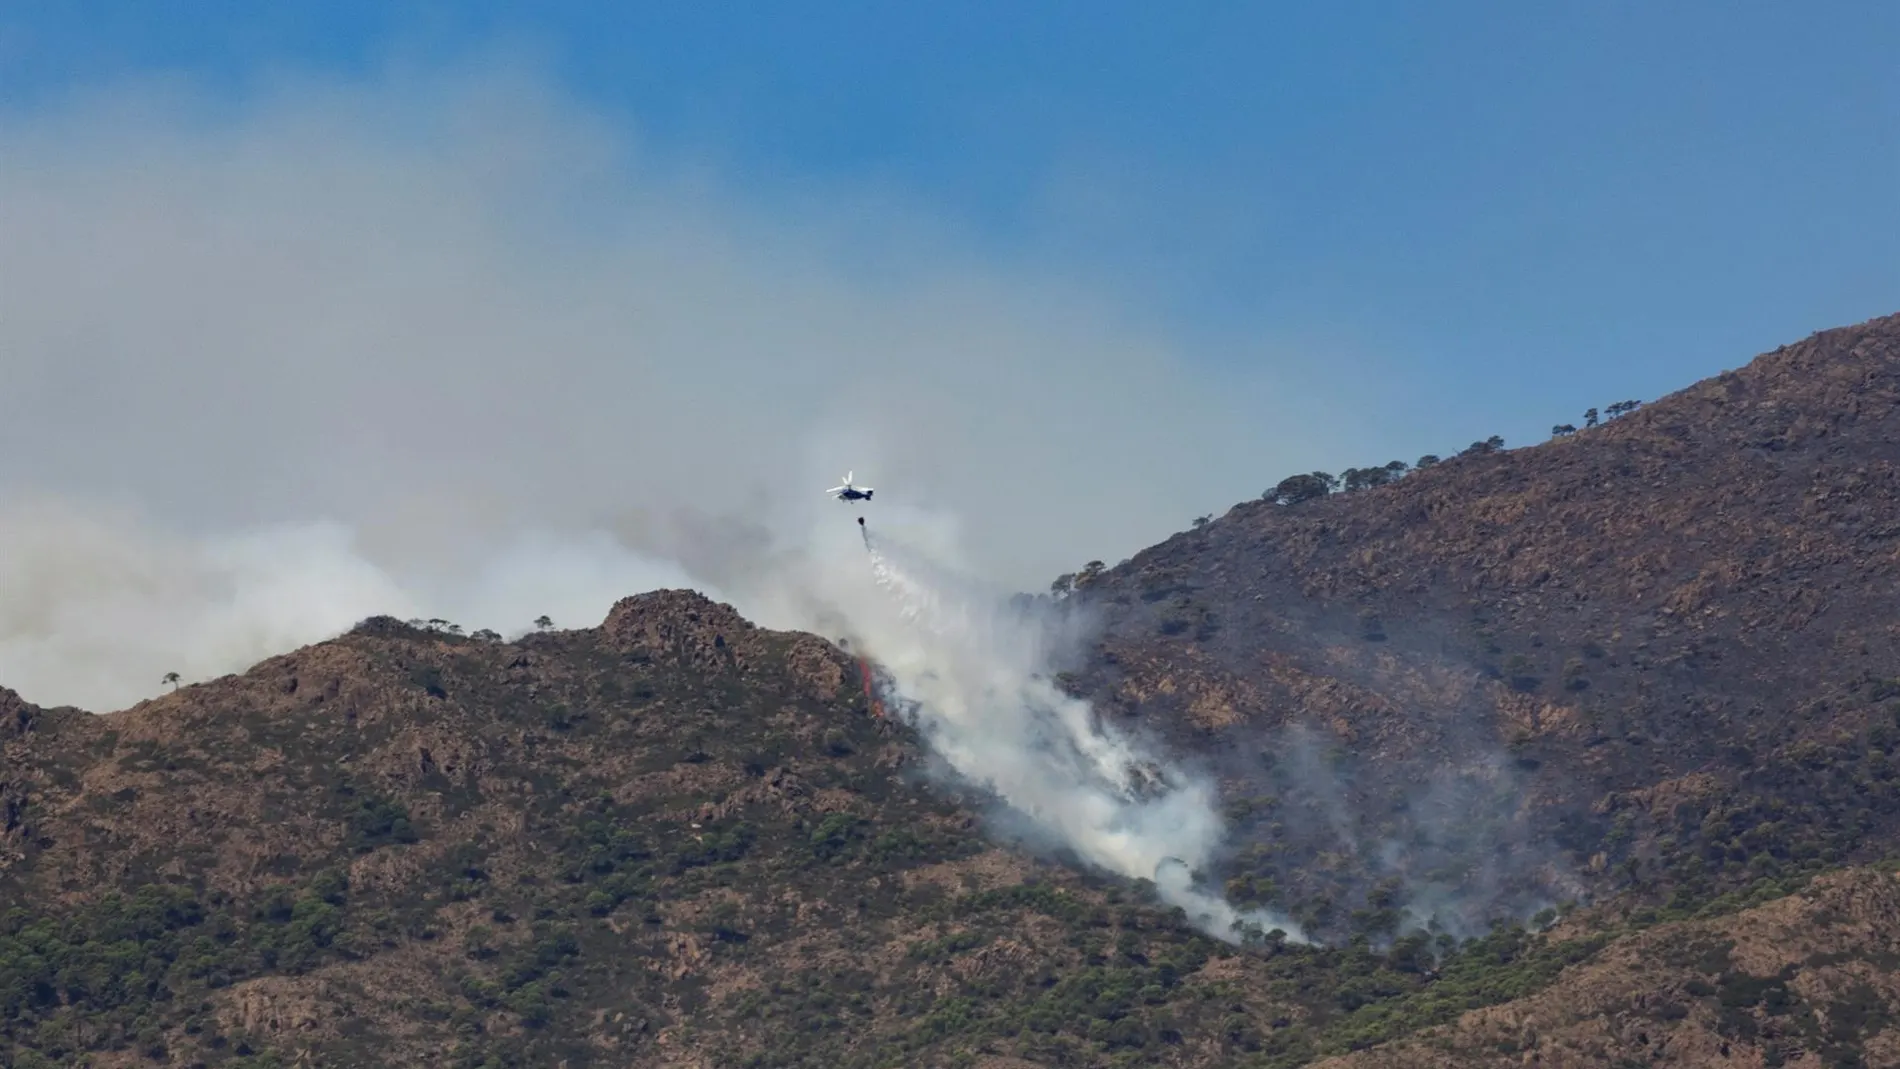  Un helicóptero realiza una descarga en una zona afectada por el incendio de Sierra Bermeja.